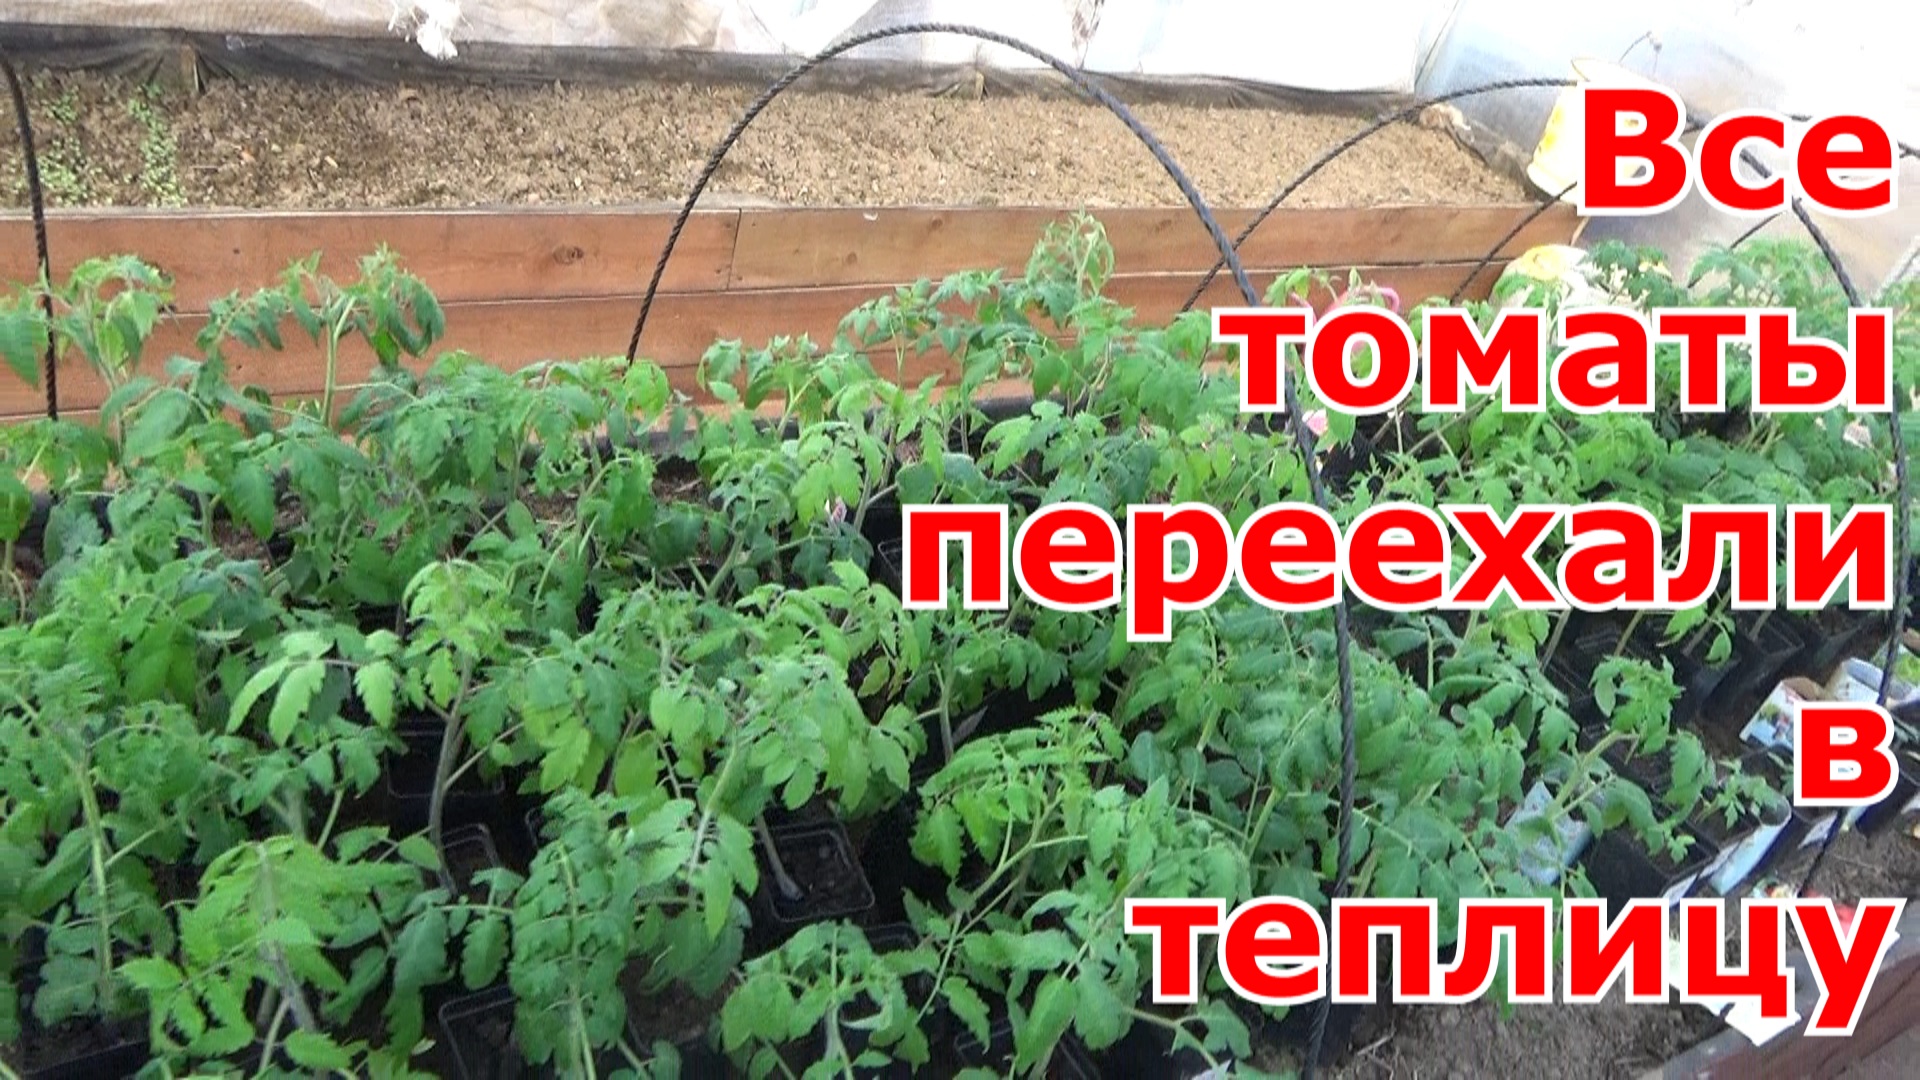 Обзор рассады томатов на 22.03. фирмы Гавриш. Рассада томатов уже неделю в поликарбонатной теплице.